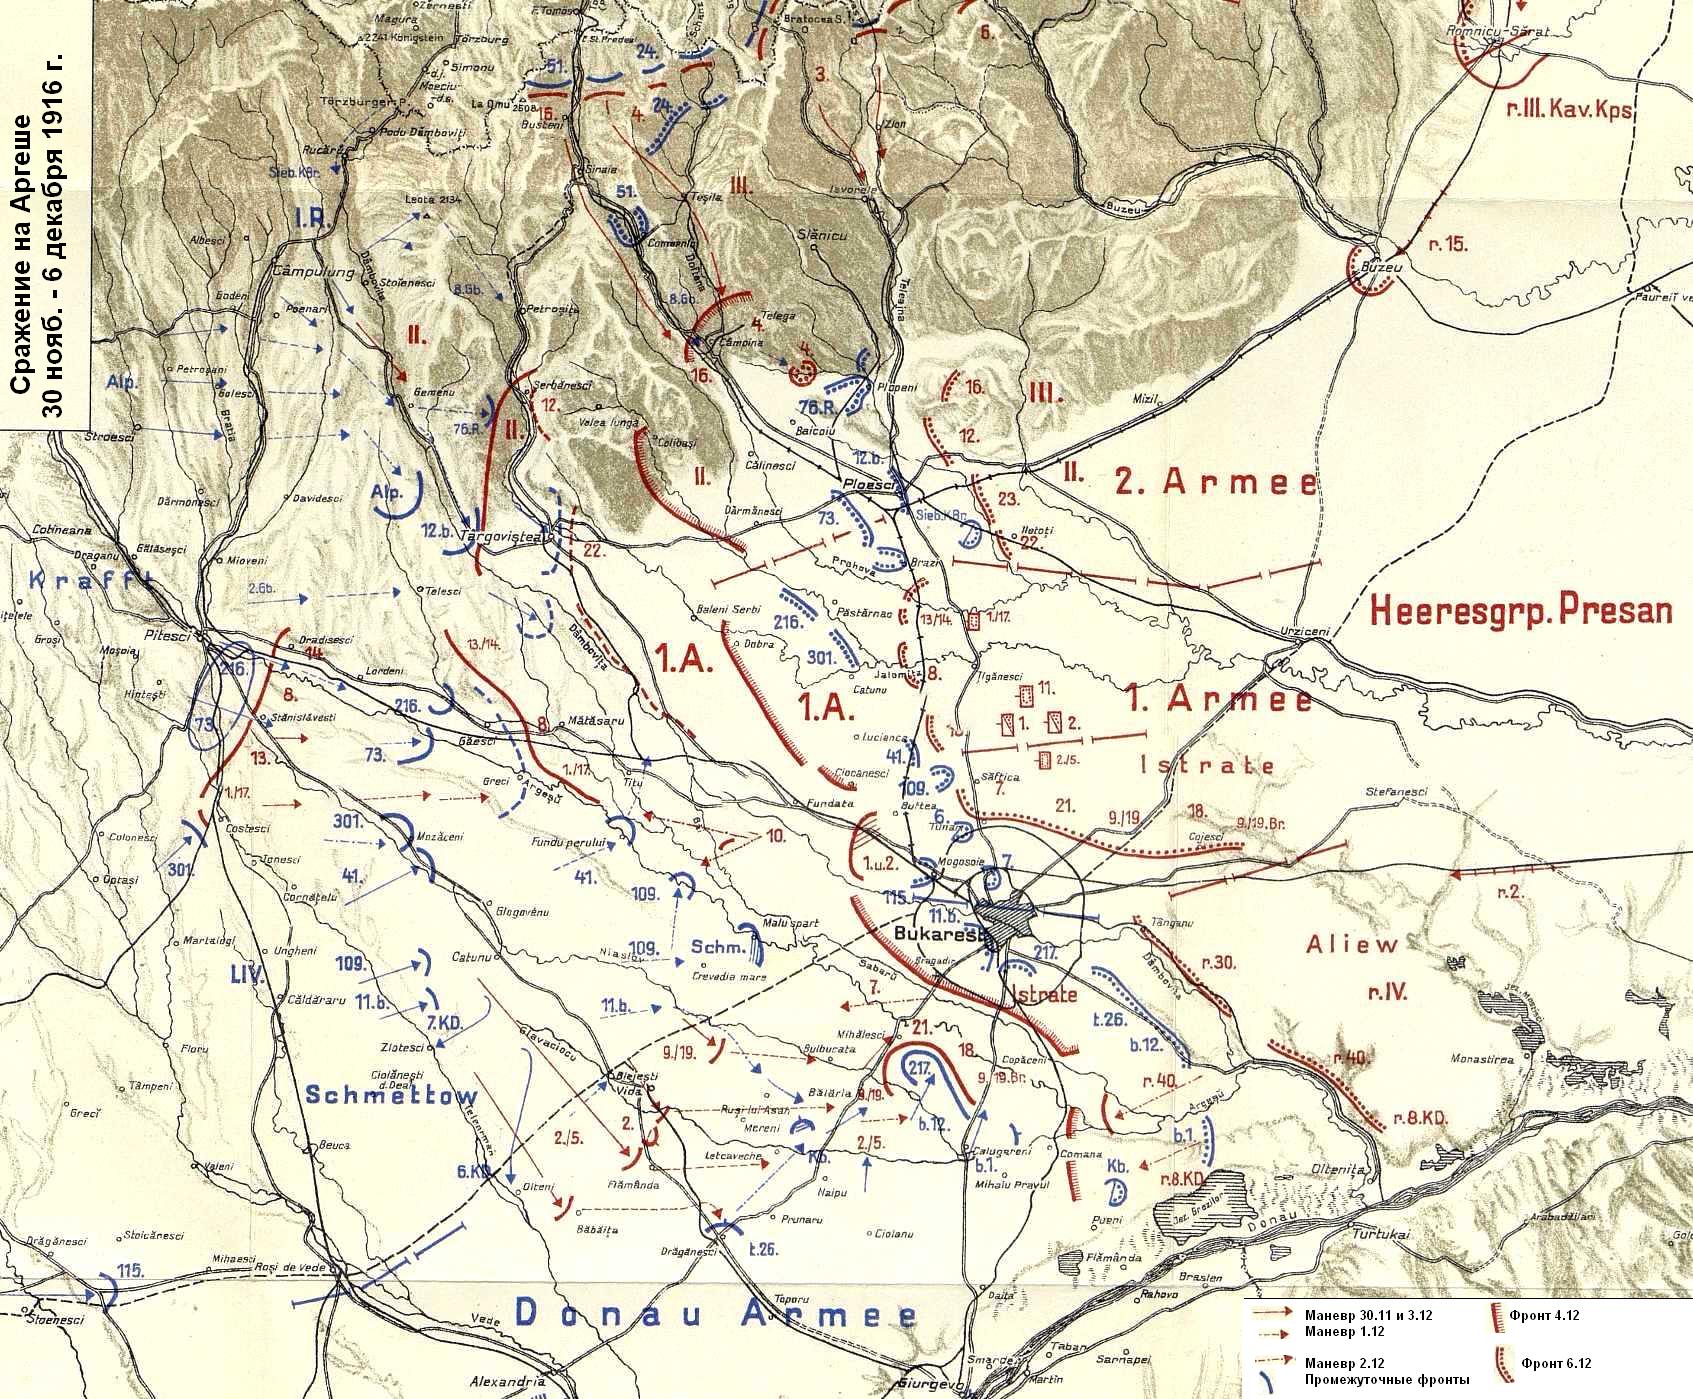 Схема сражения на реке Аргеш (сражения за Бухарест) 30 ноября - 6 декабря 1916 года